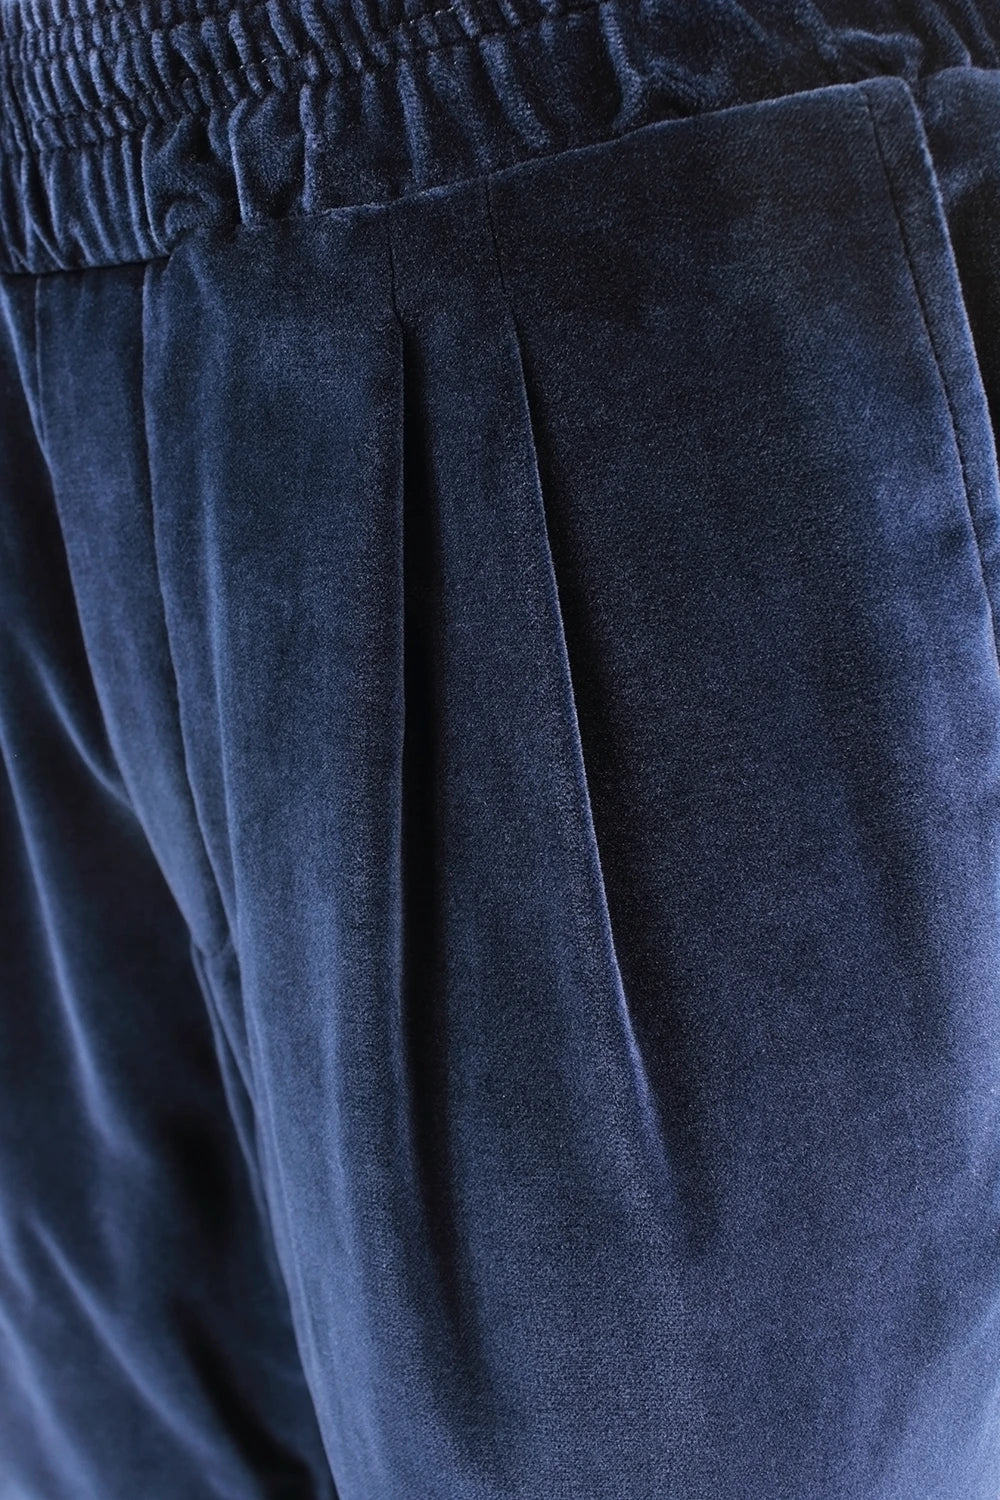 Pantalone con elastico in vita in velluto liscio blu pince